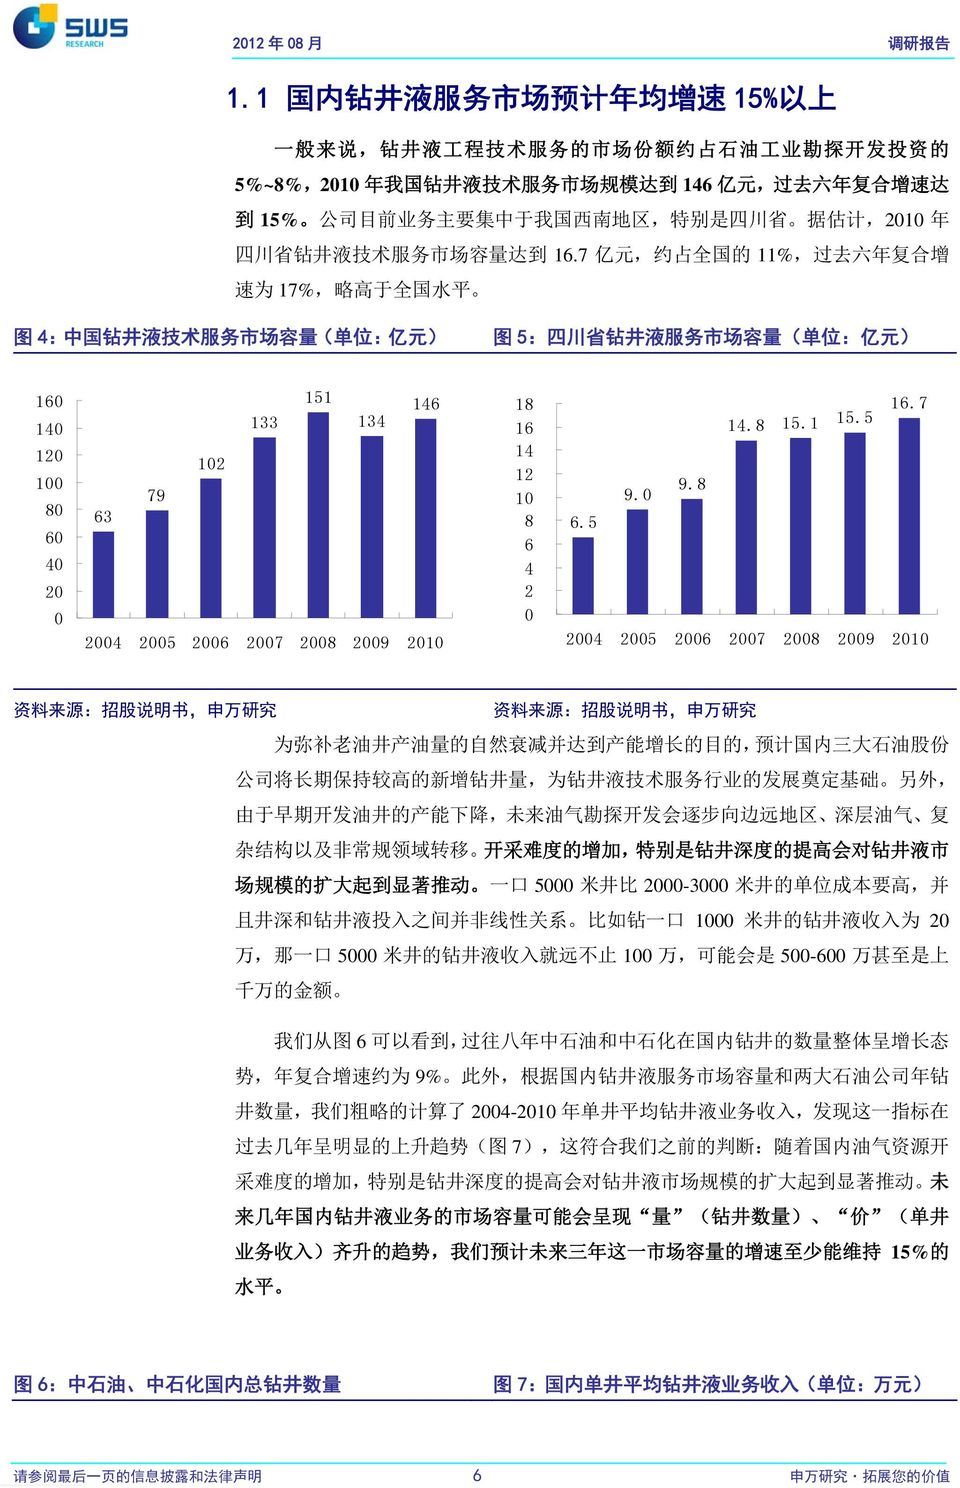 于 我 国 西 南 地 区, 特 别 是 四 川 省 据 估 计,2010 年 四 川 省 钻 井 液 技 术 服 务 市 场 容 量 达 到 16.